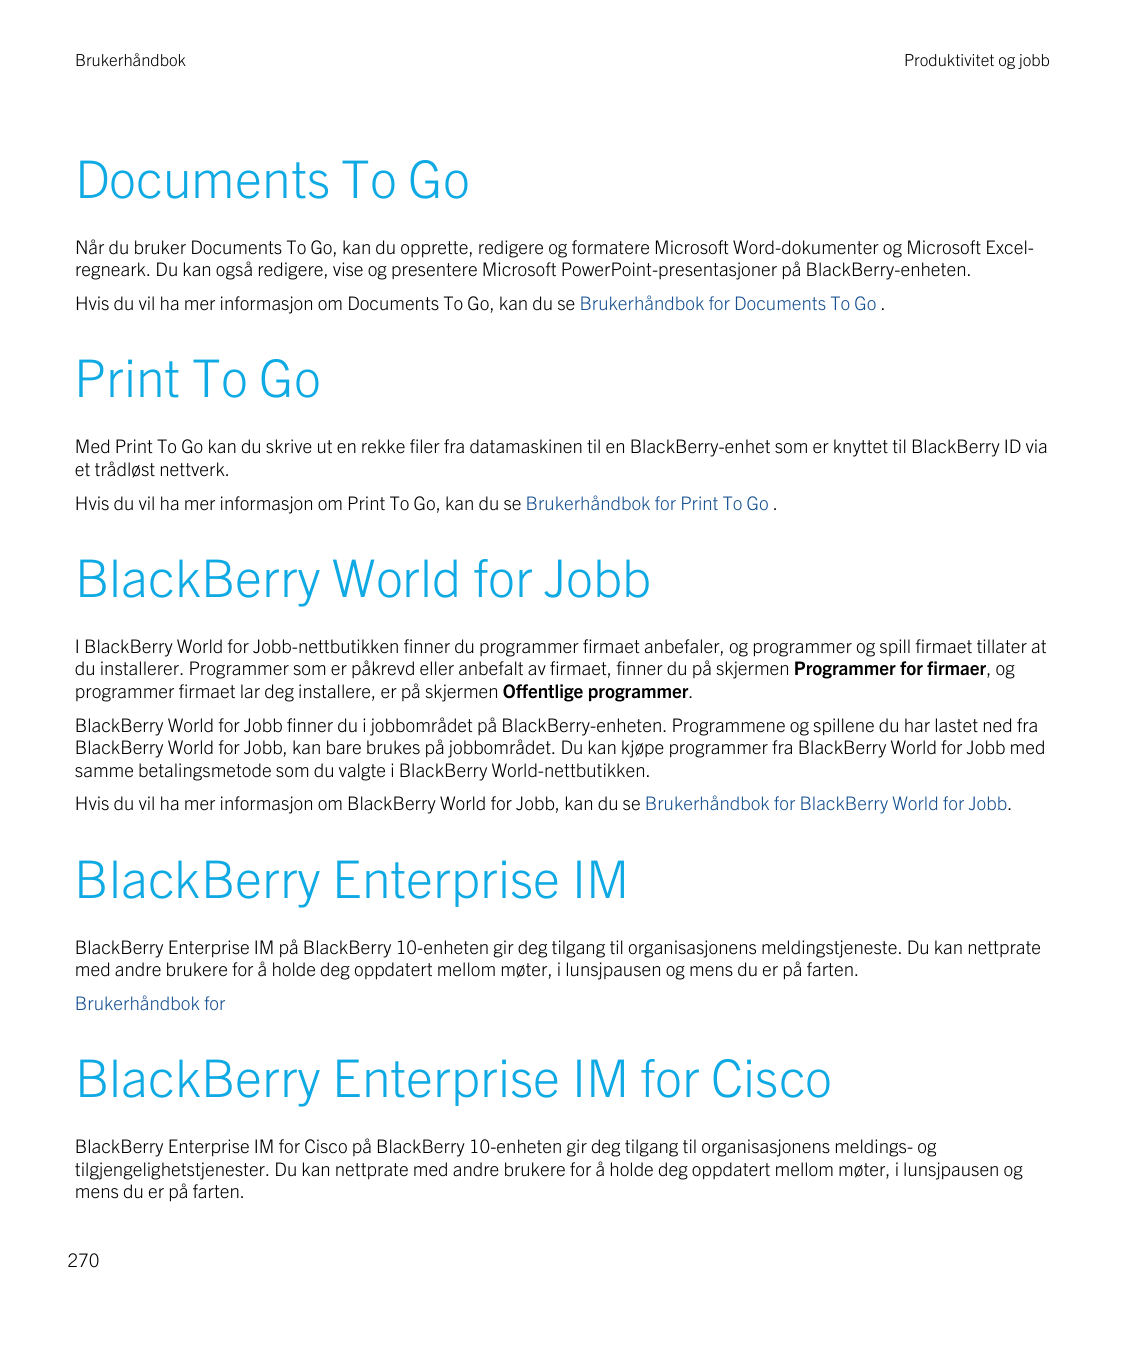 BrukerhåndbokProduktivitet og jobbDocuments To GoNår du bruker Documents To Go, kan du opprette, redigere og formatere Microsoft